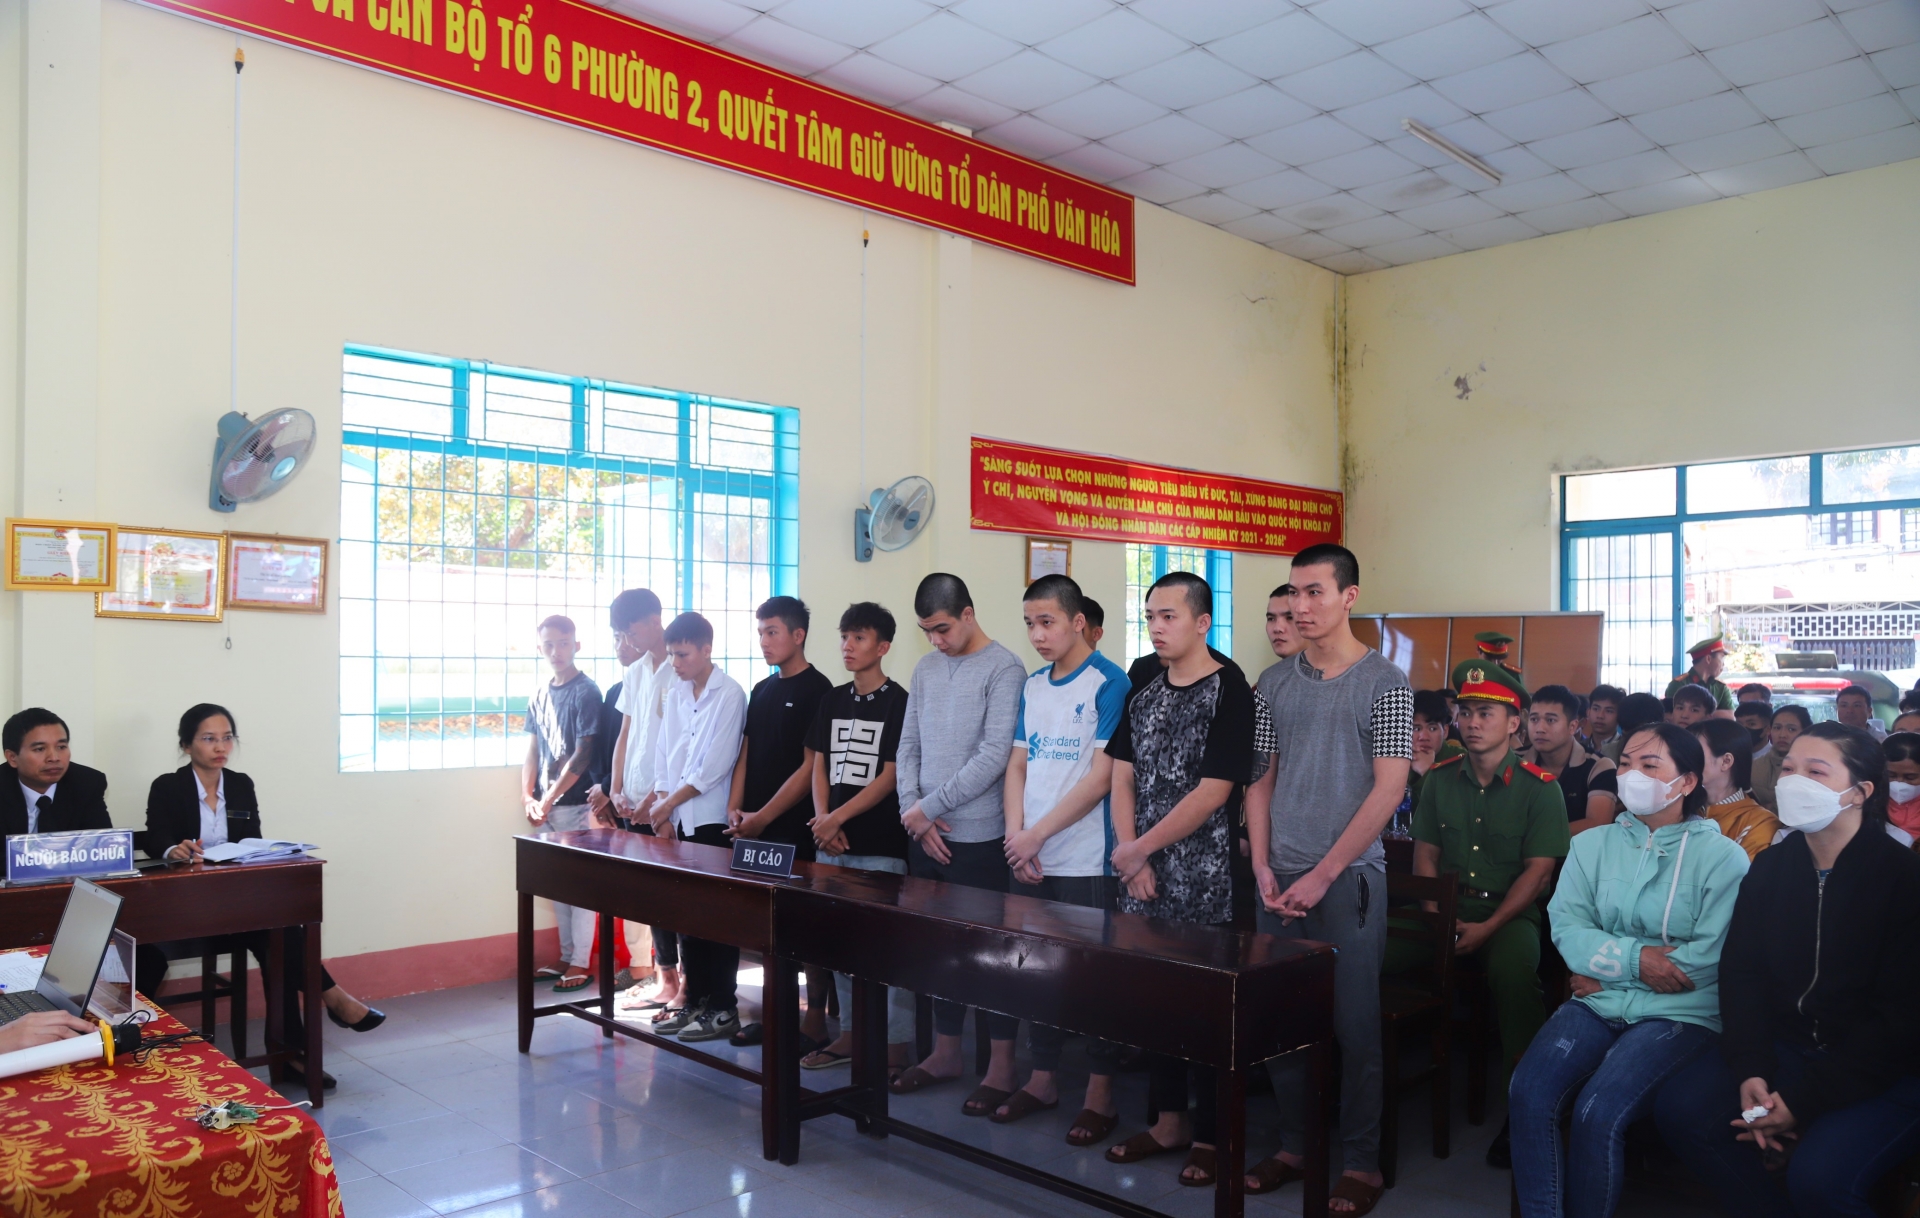 Bảo Lộc: Rủ nhau tham gia hỗn chiến rồi cướp xe nạn nhân, 13 bị cáo lãnh án